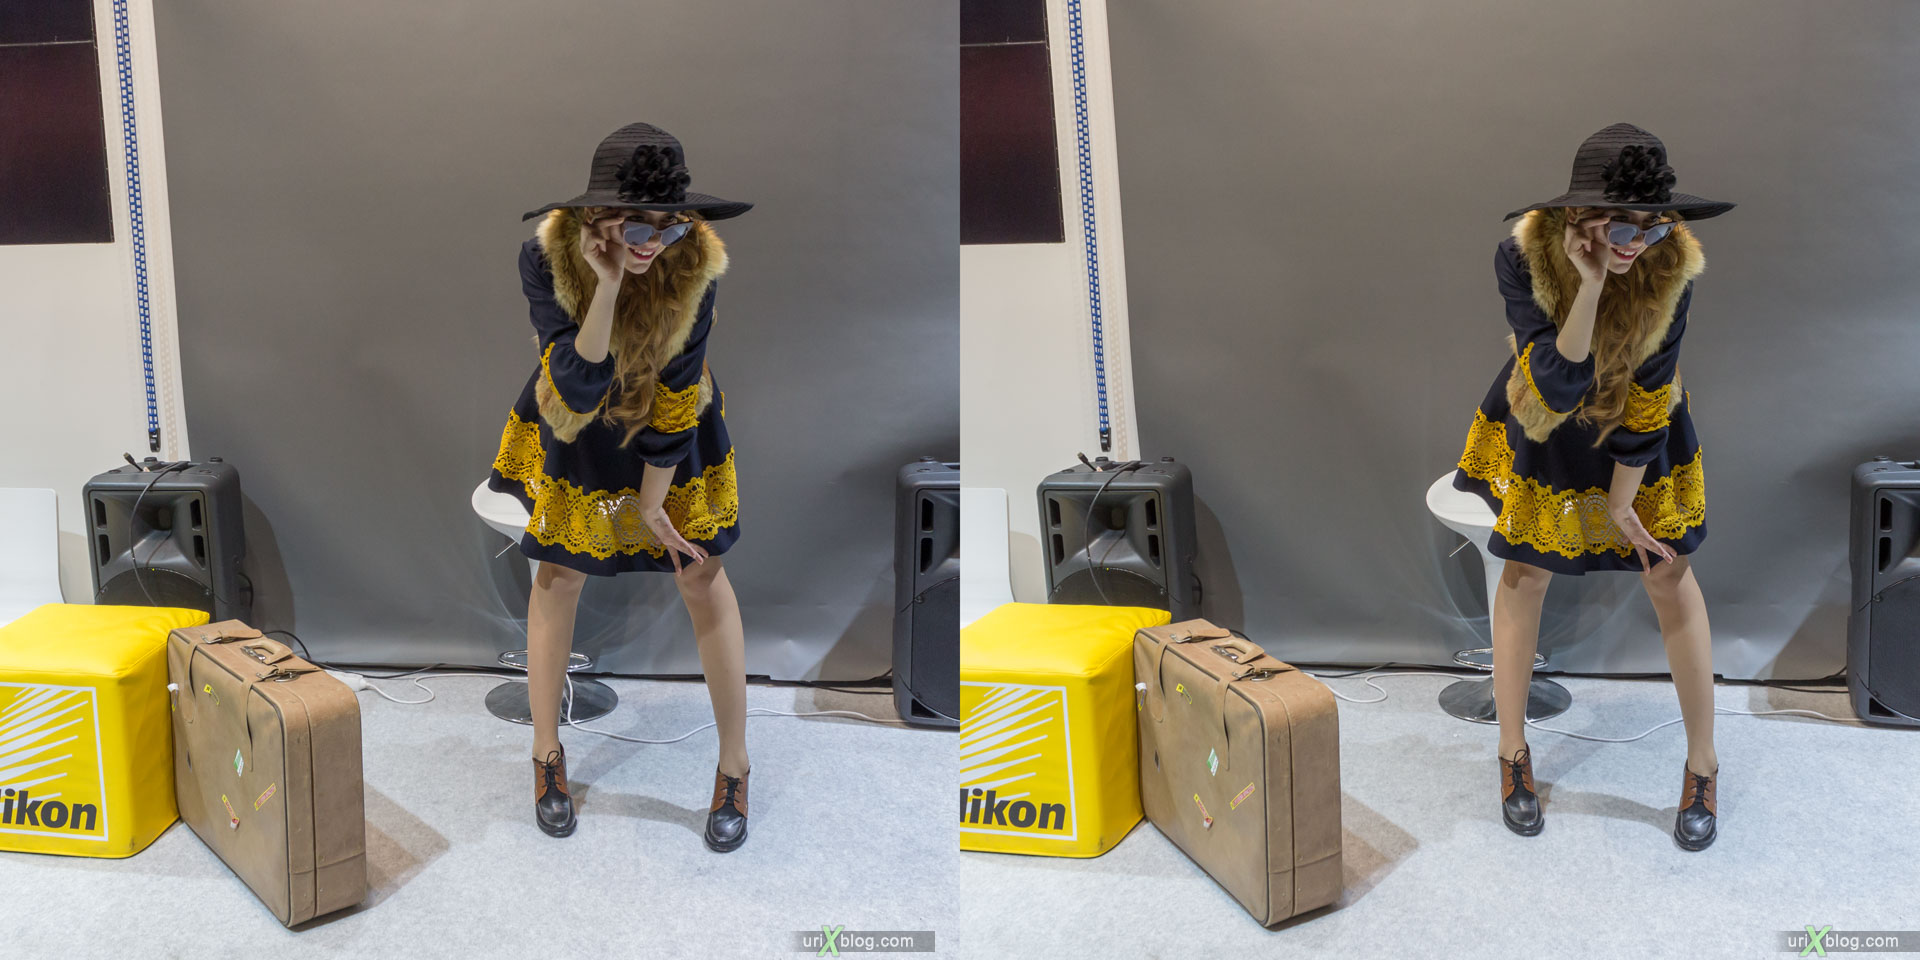 модель, девушка, Фотофорум, Крокус Экспо, выставка, Москва, Россия, 3D, перекрёстная стереопара, стерео, стереопара, 2015